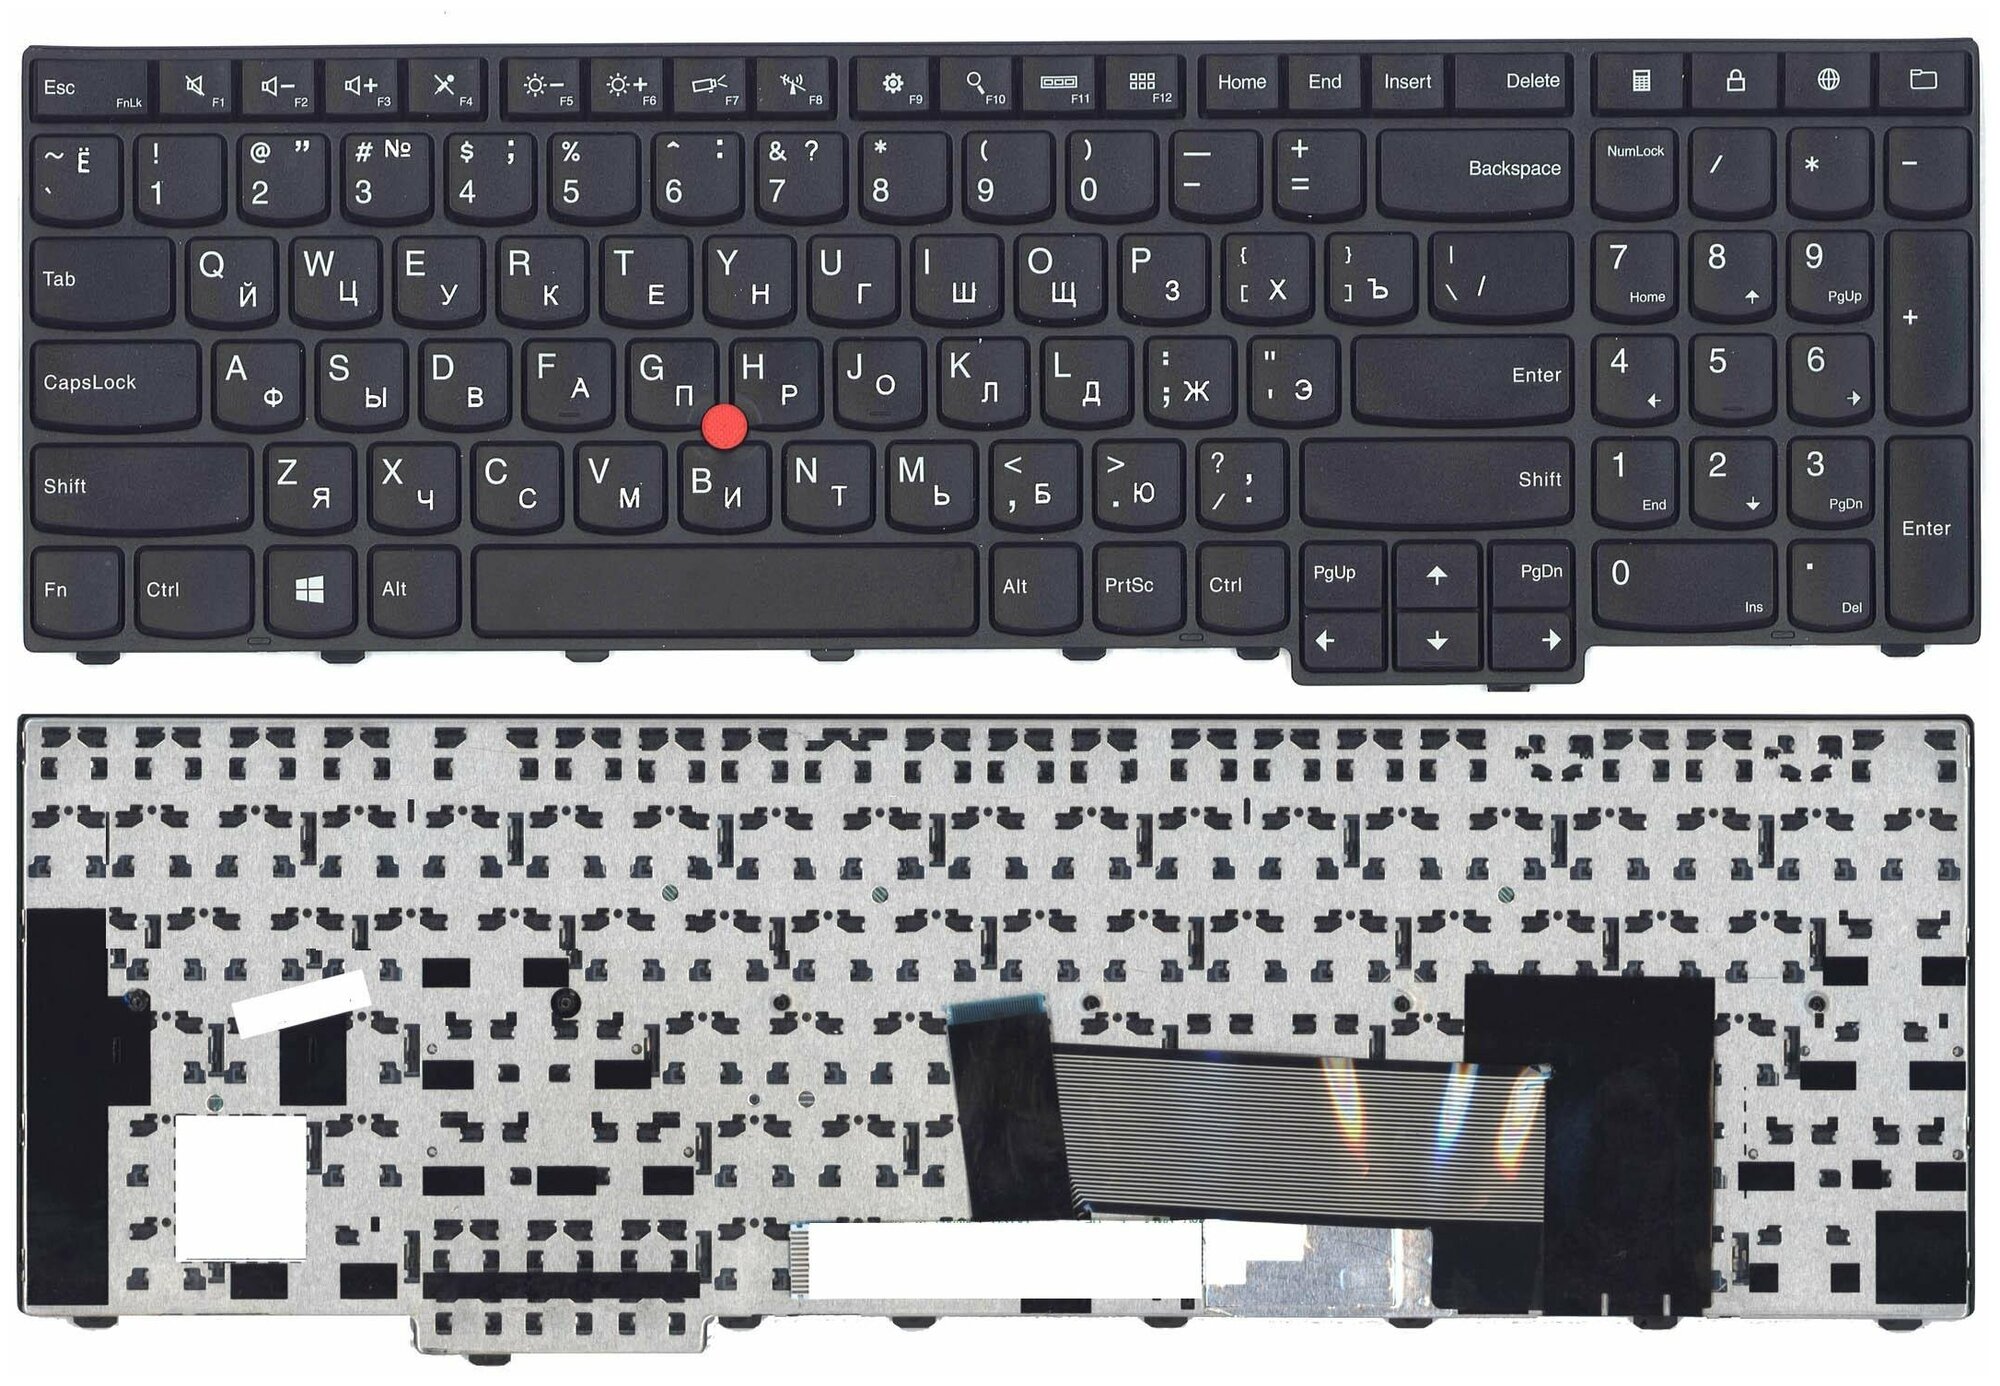 Клавиатура для ноутбука Lenovo ThinkPad Edge E531 L540 черная